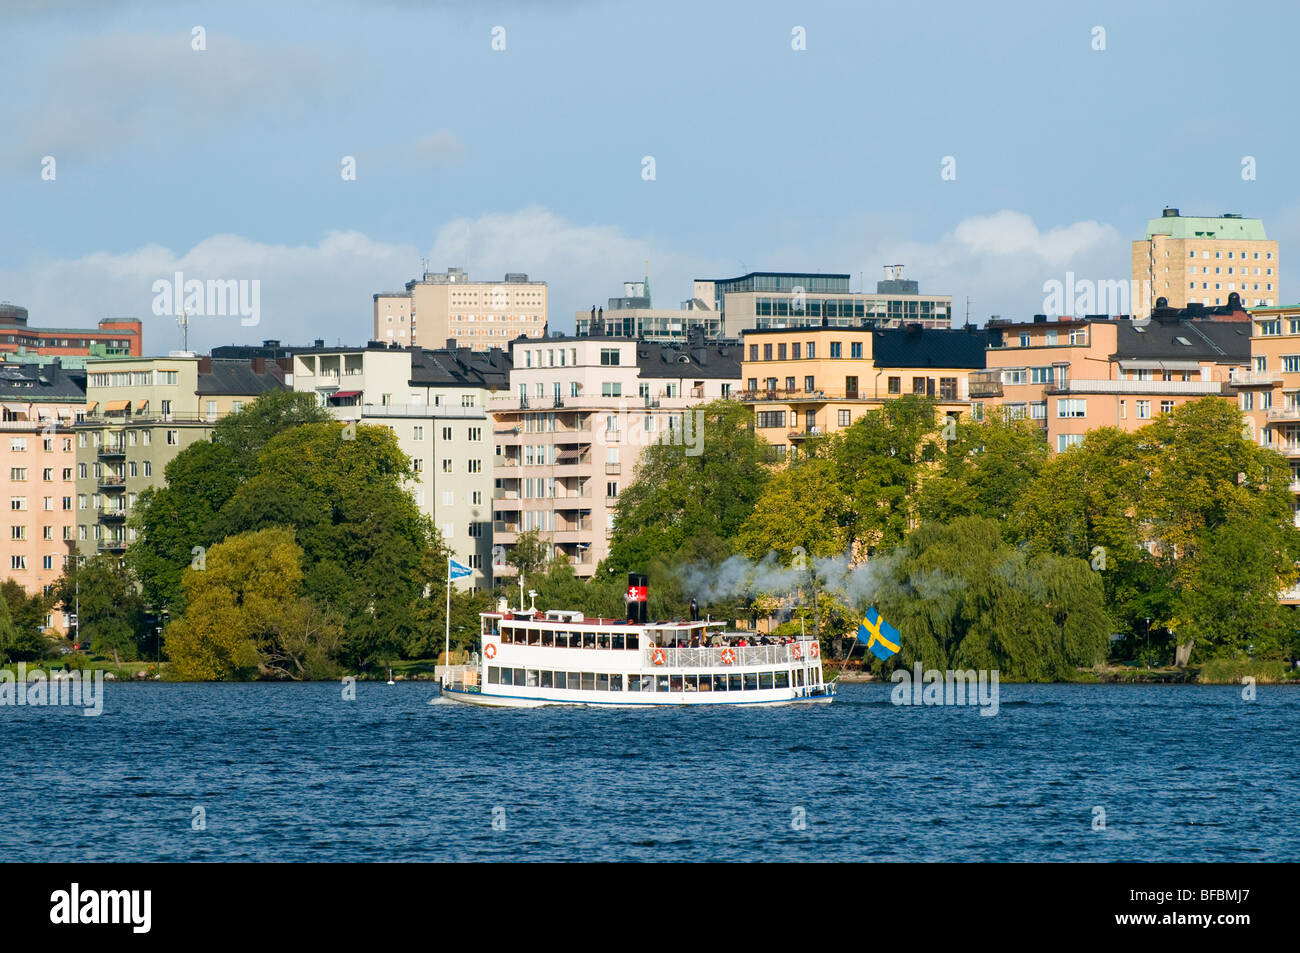 Pequeños transbordadores de pasajeros a vapor en el lago Mälaren en Estocolmo. Foto de stock